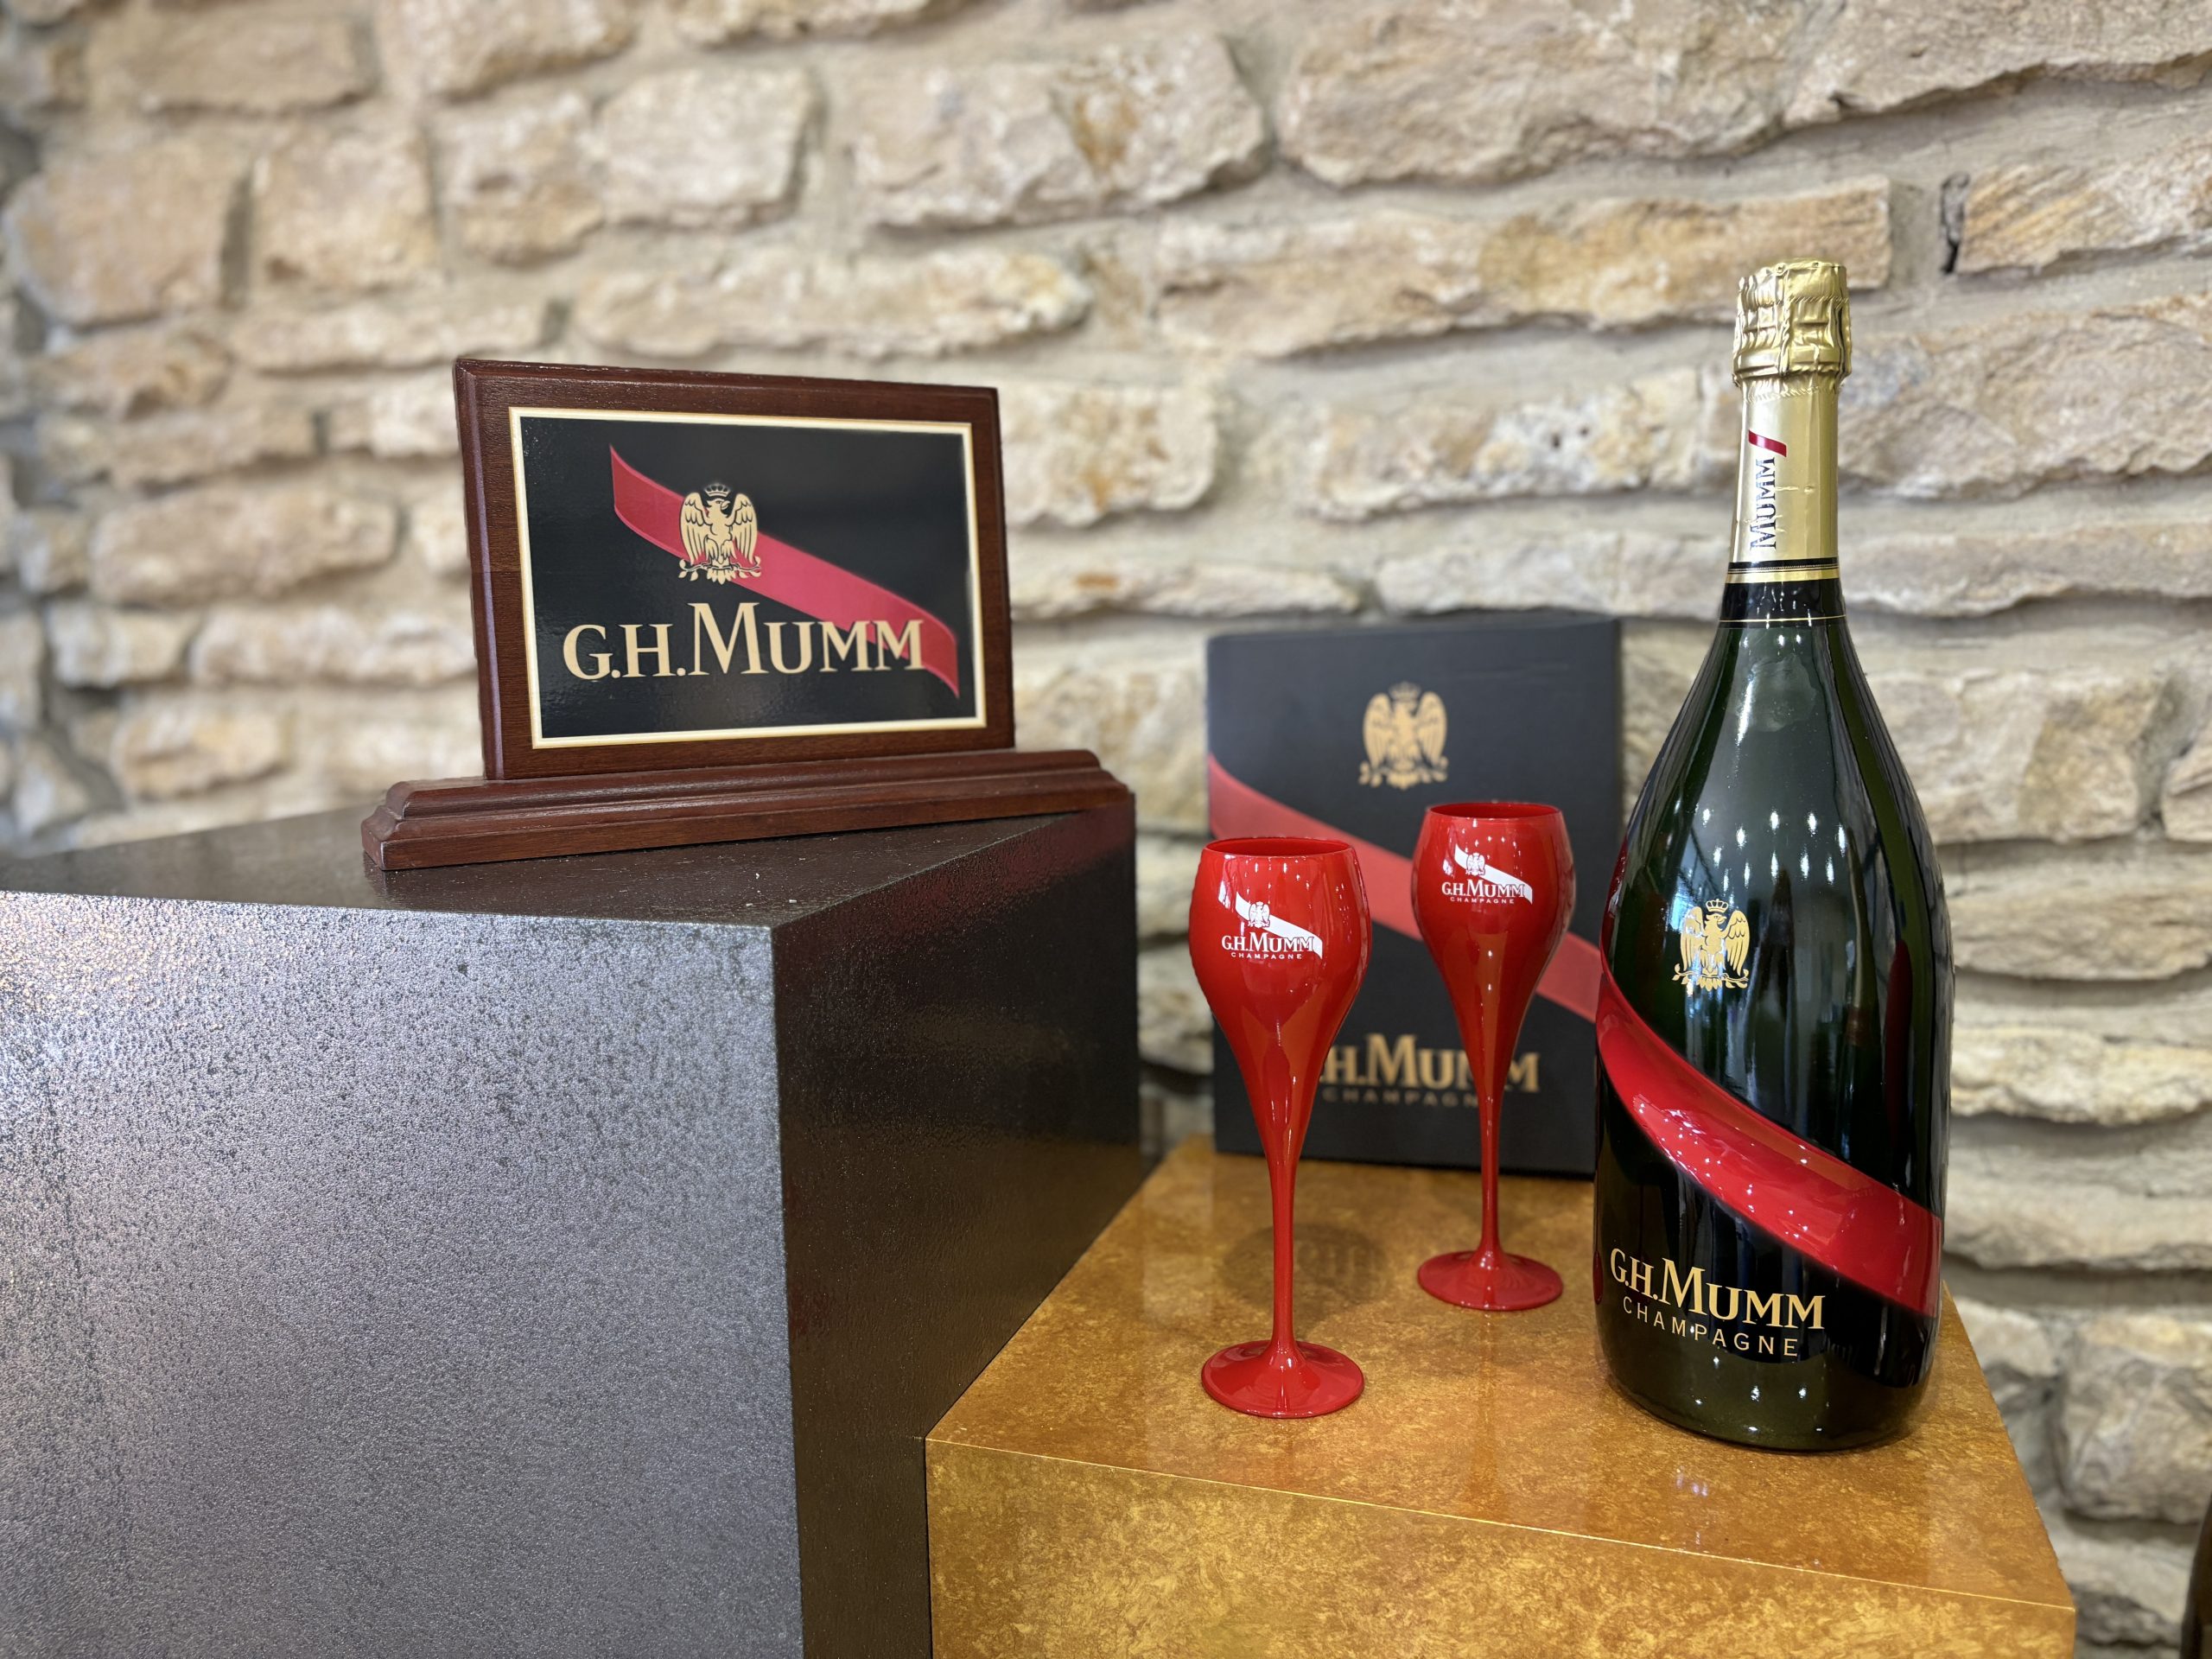 SOLD / ELADVA – G.H. MUMM Champagne ajándékcsomag 0,75L vagy 1,5L magnum palackkal – 38.800.-Ft, vagy 58.500.-Ft